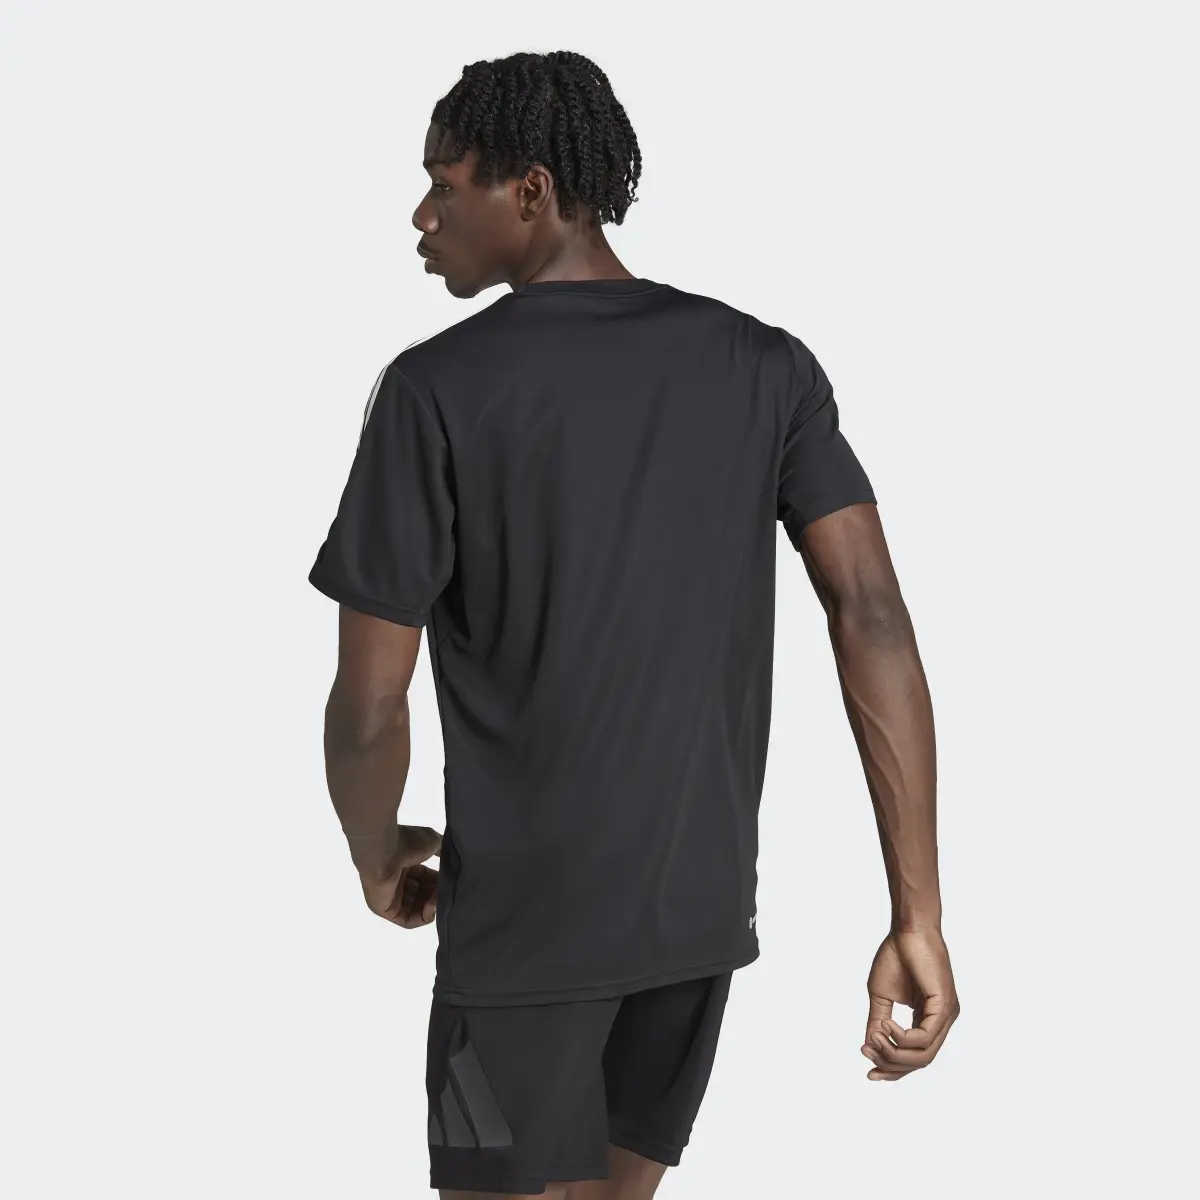 Adidas Train Essentials 3-Streifen Training T-Shirt. 3